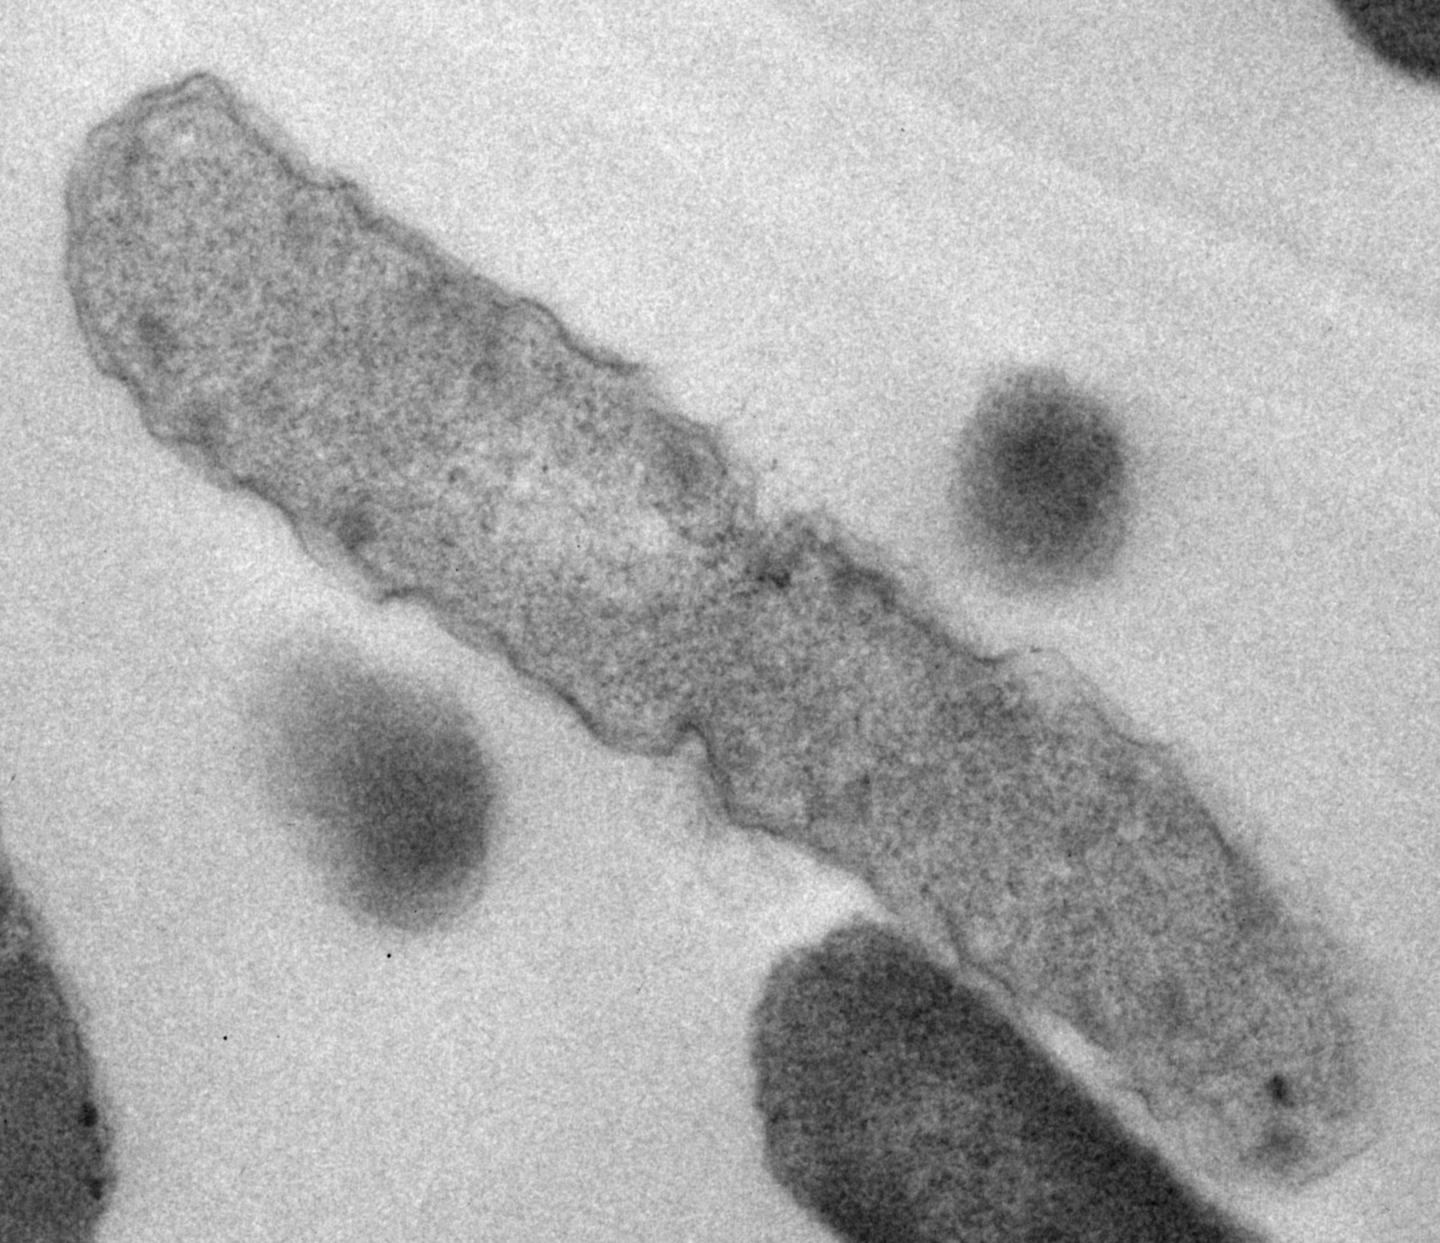 Dead Bacteria -- Microscopic